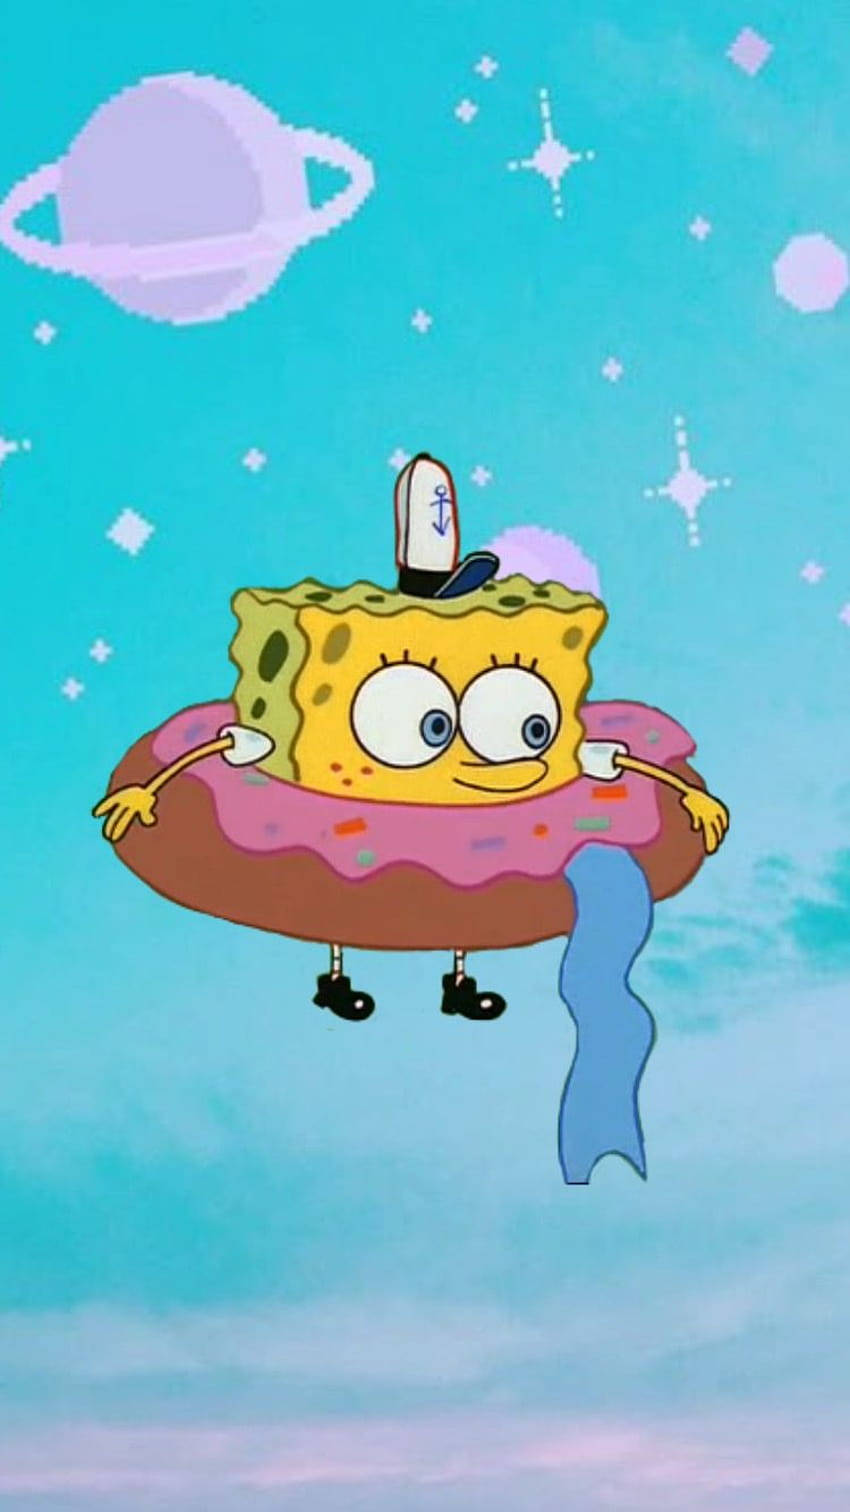 Spongebobmeme-profilbild Wallpaper